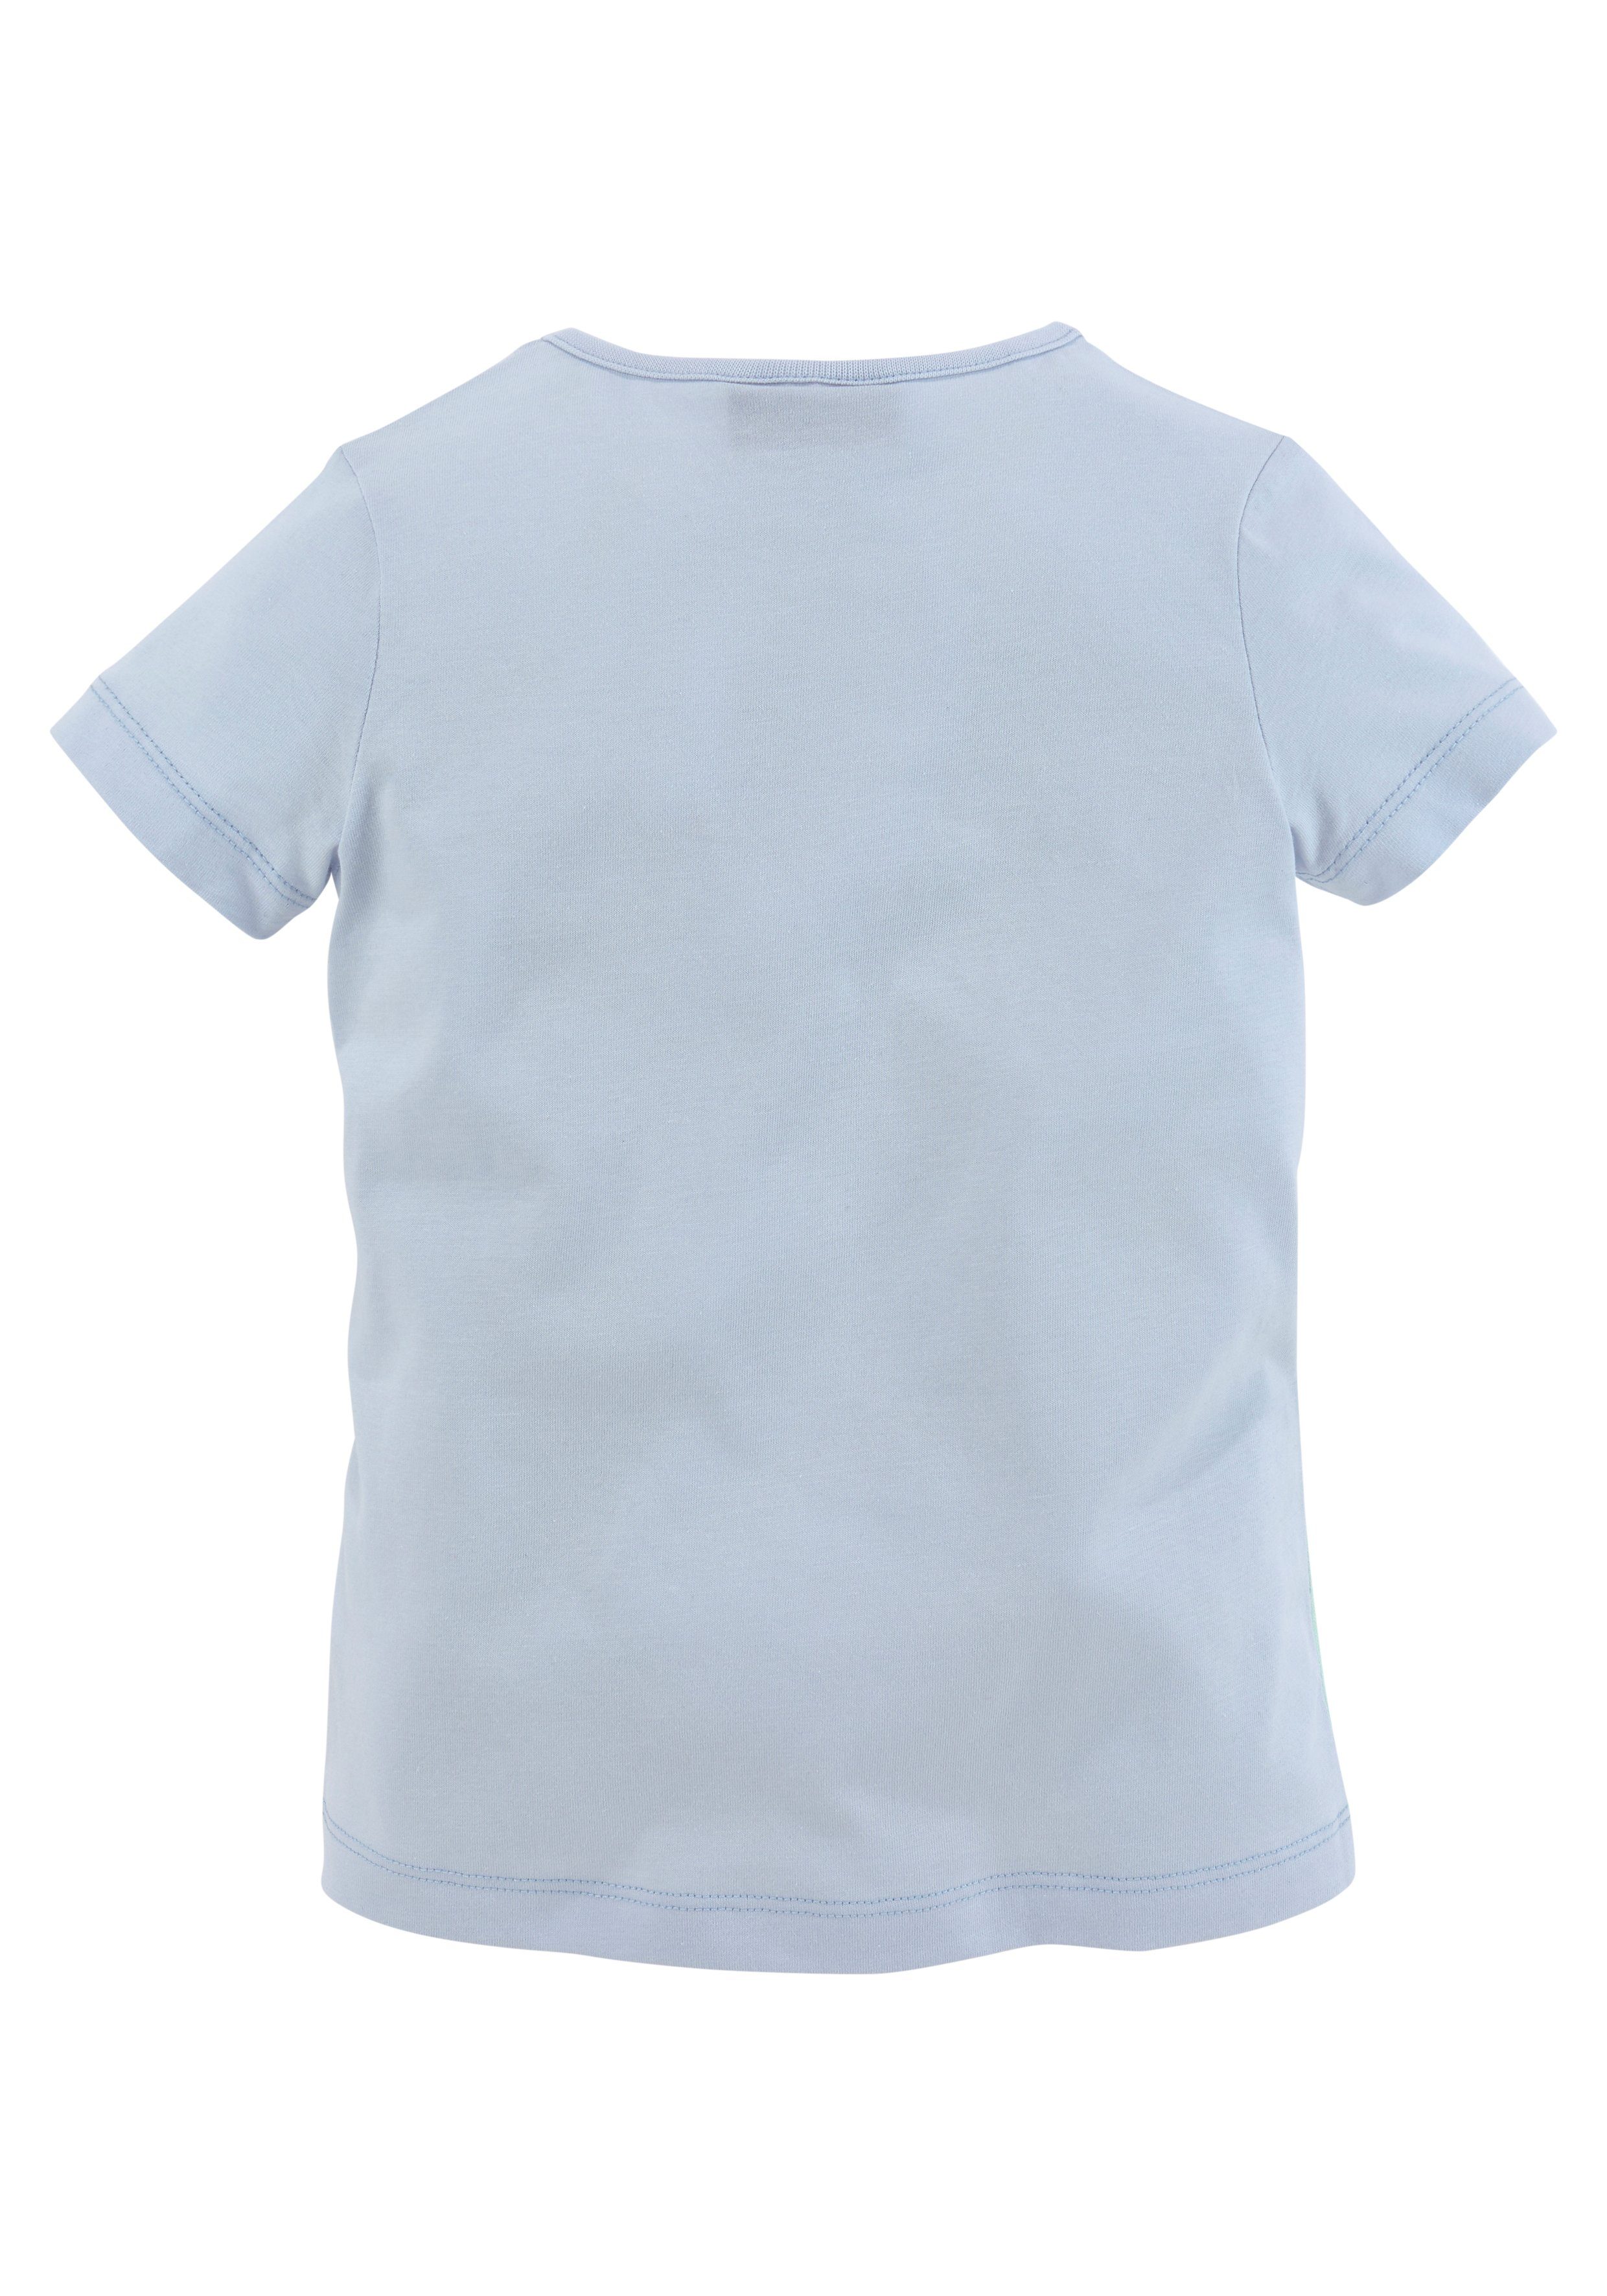 Miss Melody Pferdemotiv T-Shirt mit schönem hellblau